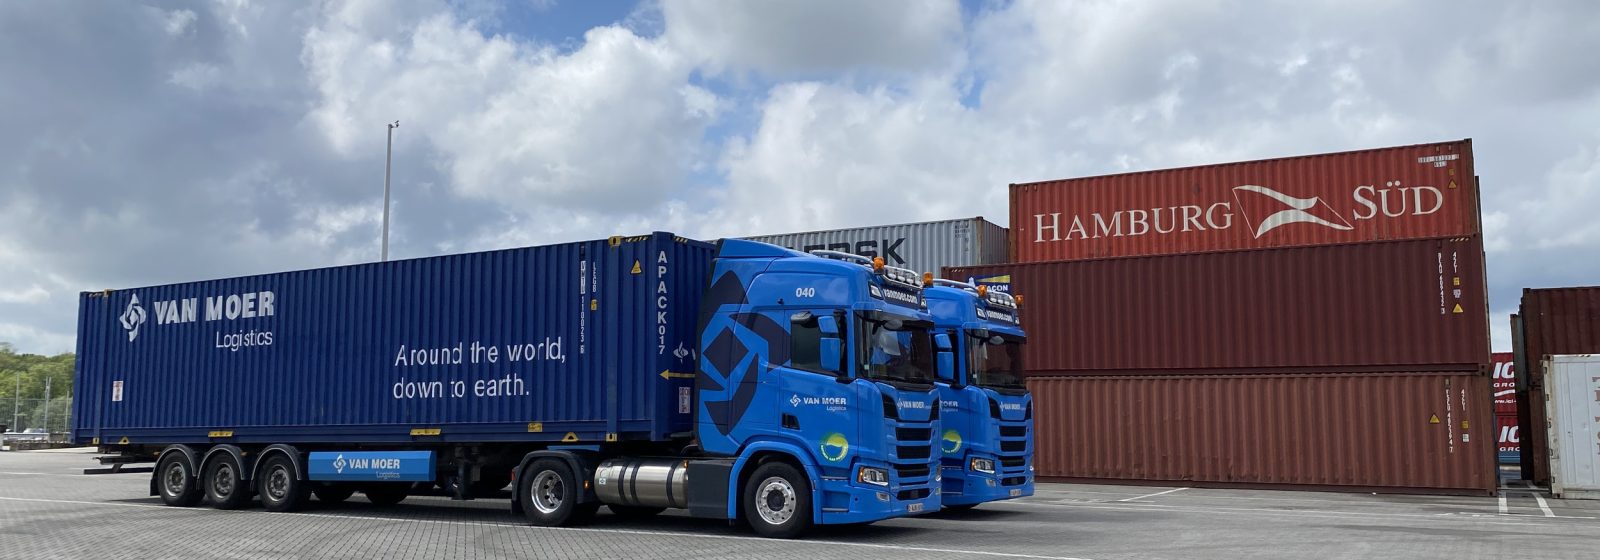 Van Moer Logistics containervervoer